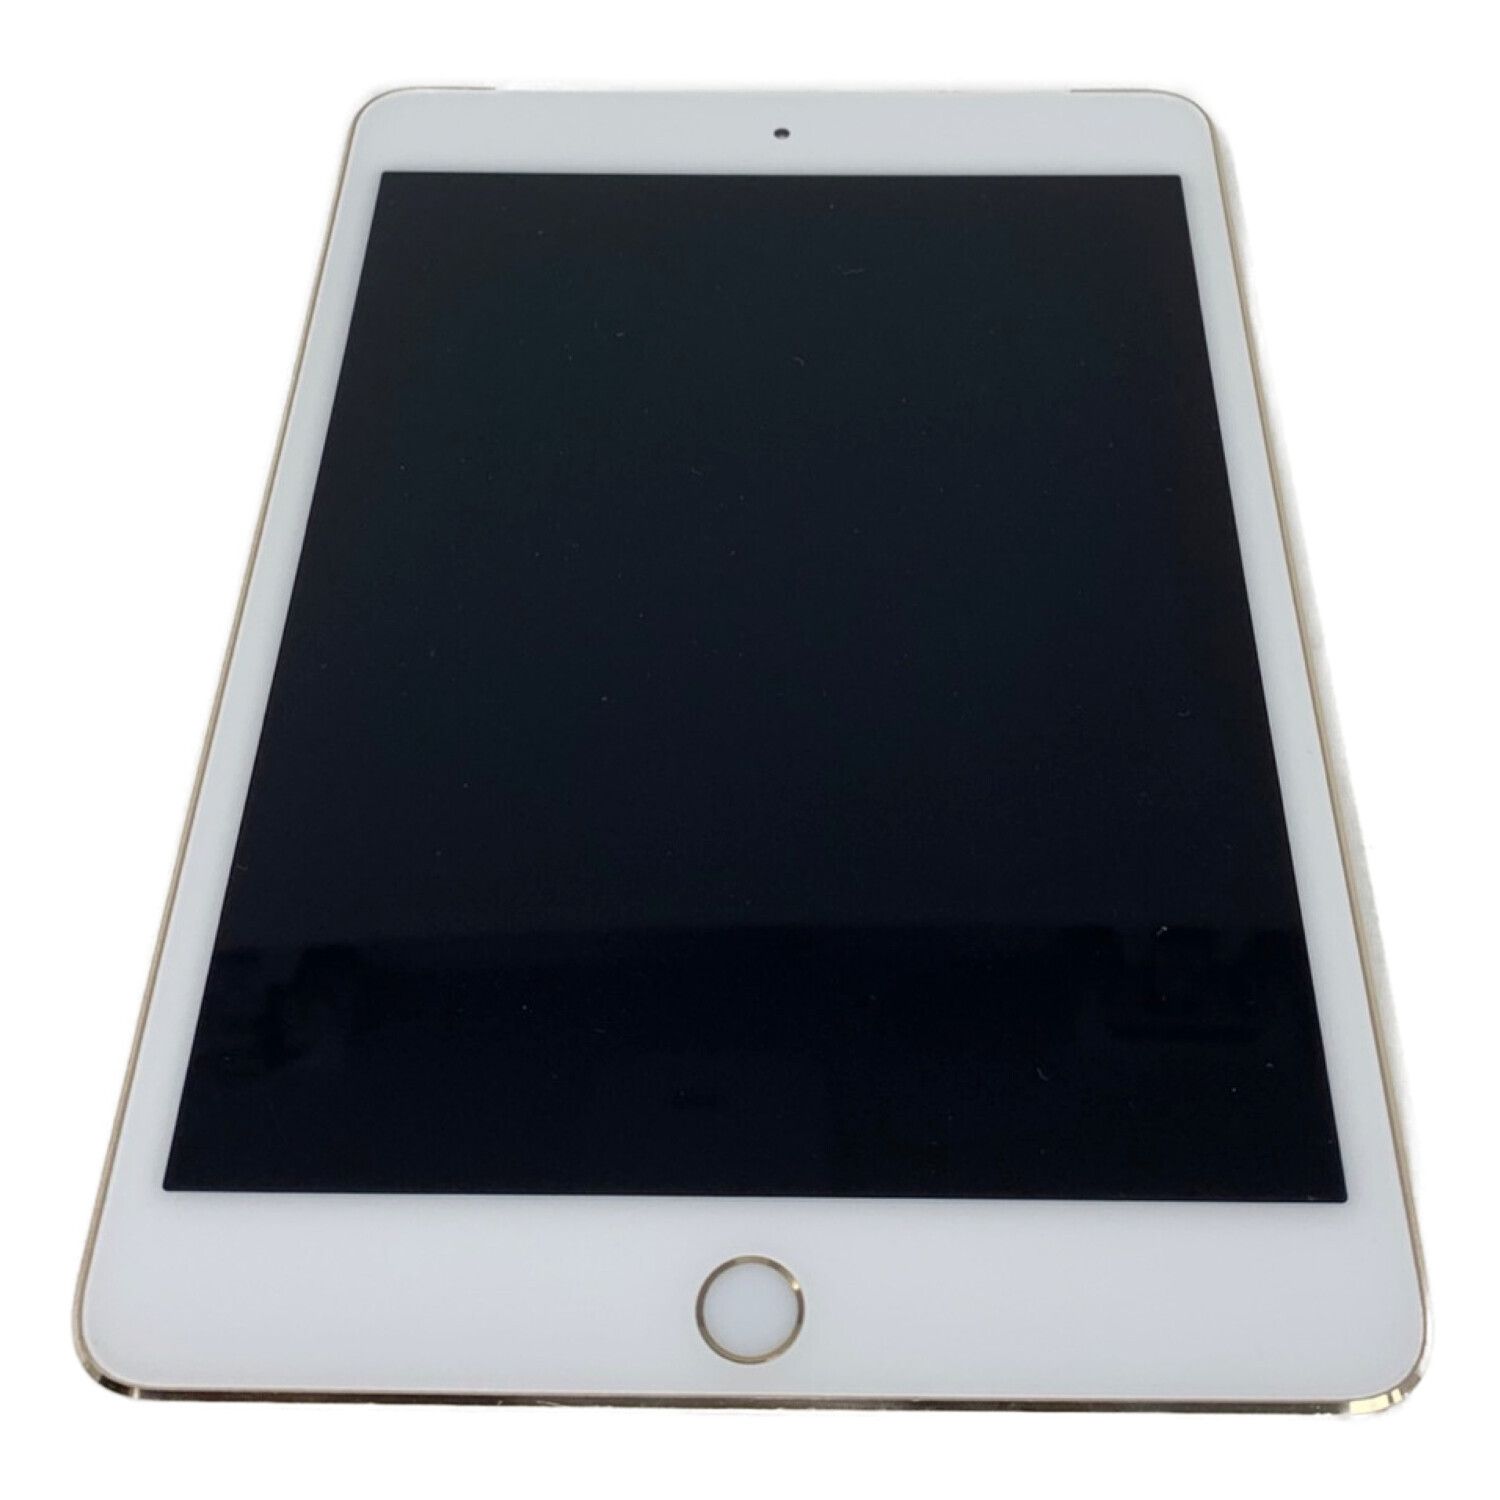 Apple (アップル) iPad mini 4 Wi-Fi+Cellular 16GB SIMフリー